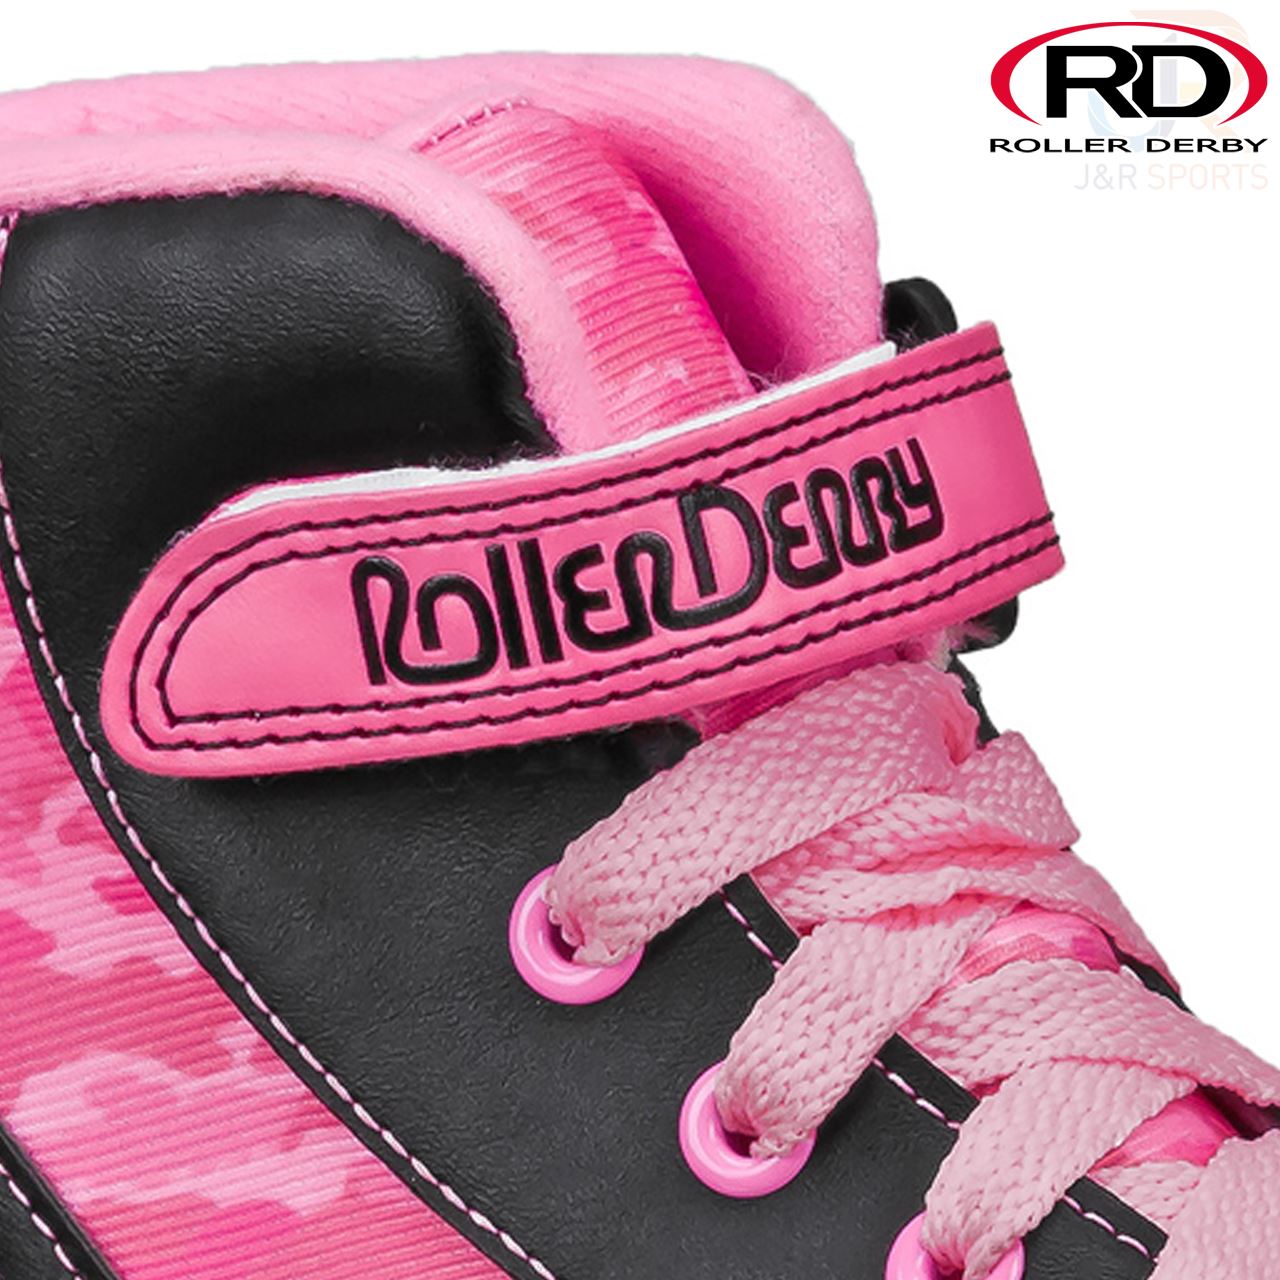 Roller Derby FireStar V2 Pink Camo Quad Skates - Momma Trucker Skates